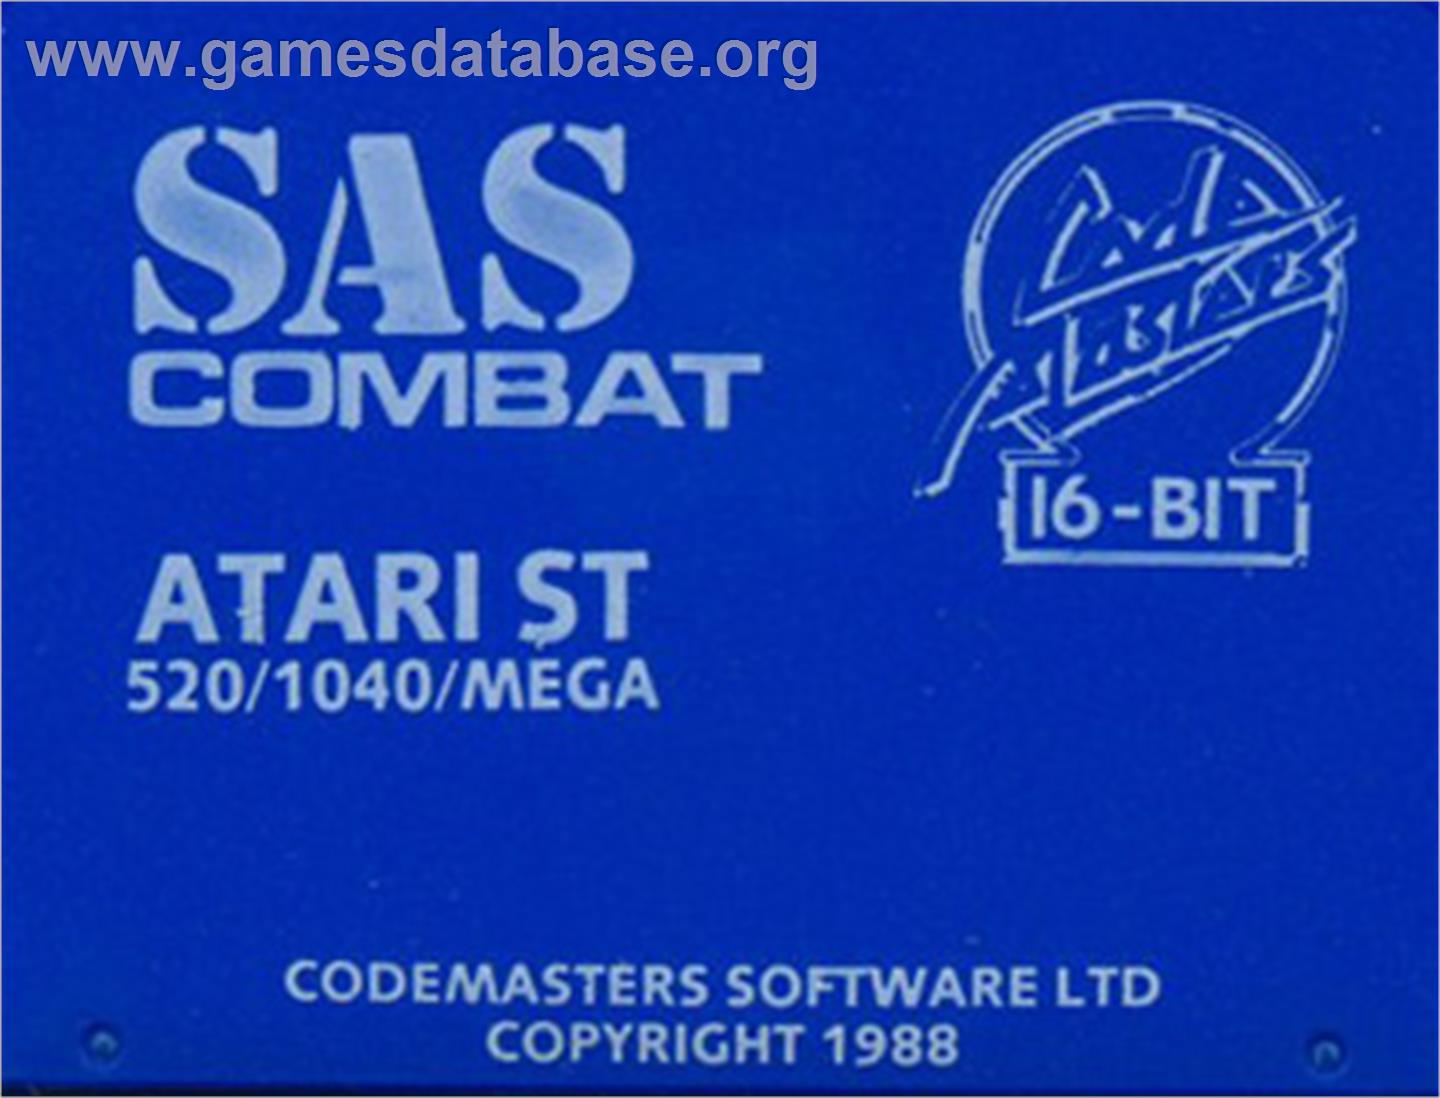 SAS Combat Simulator - Atari ST - Artwork - Cartridge Top